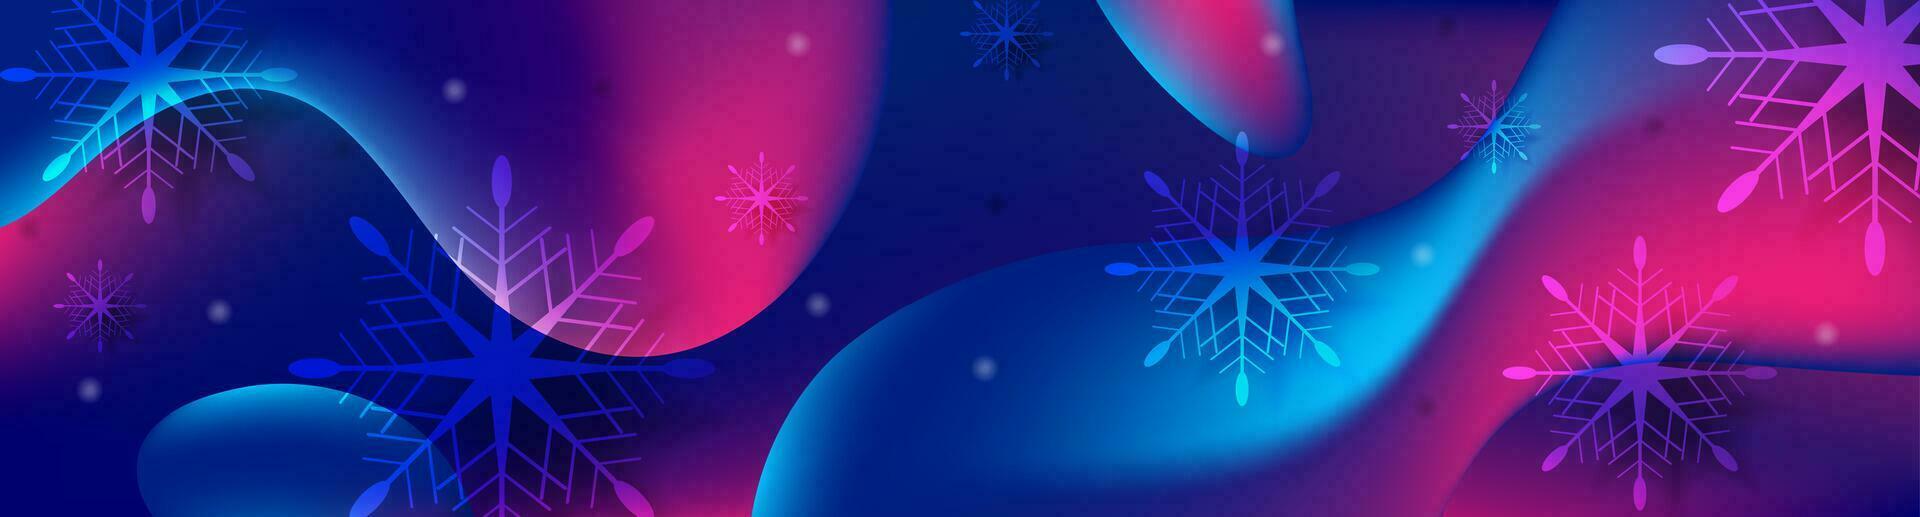 Blau lila Weihnachten Hintergrund mit Flüssigkeit wellig Formen vektor